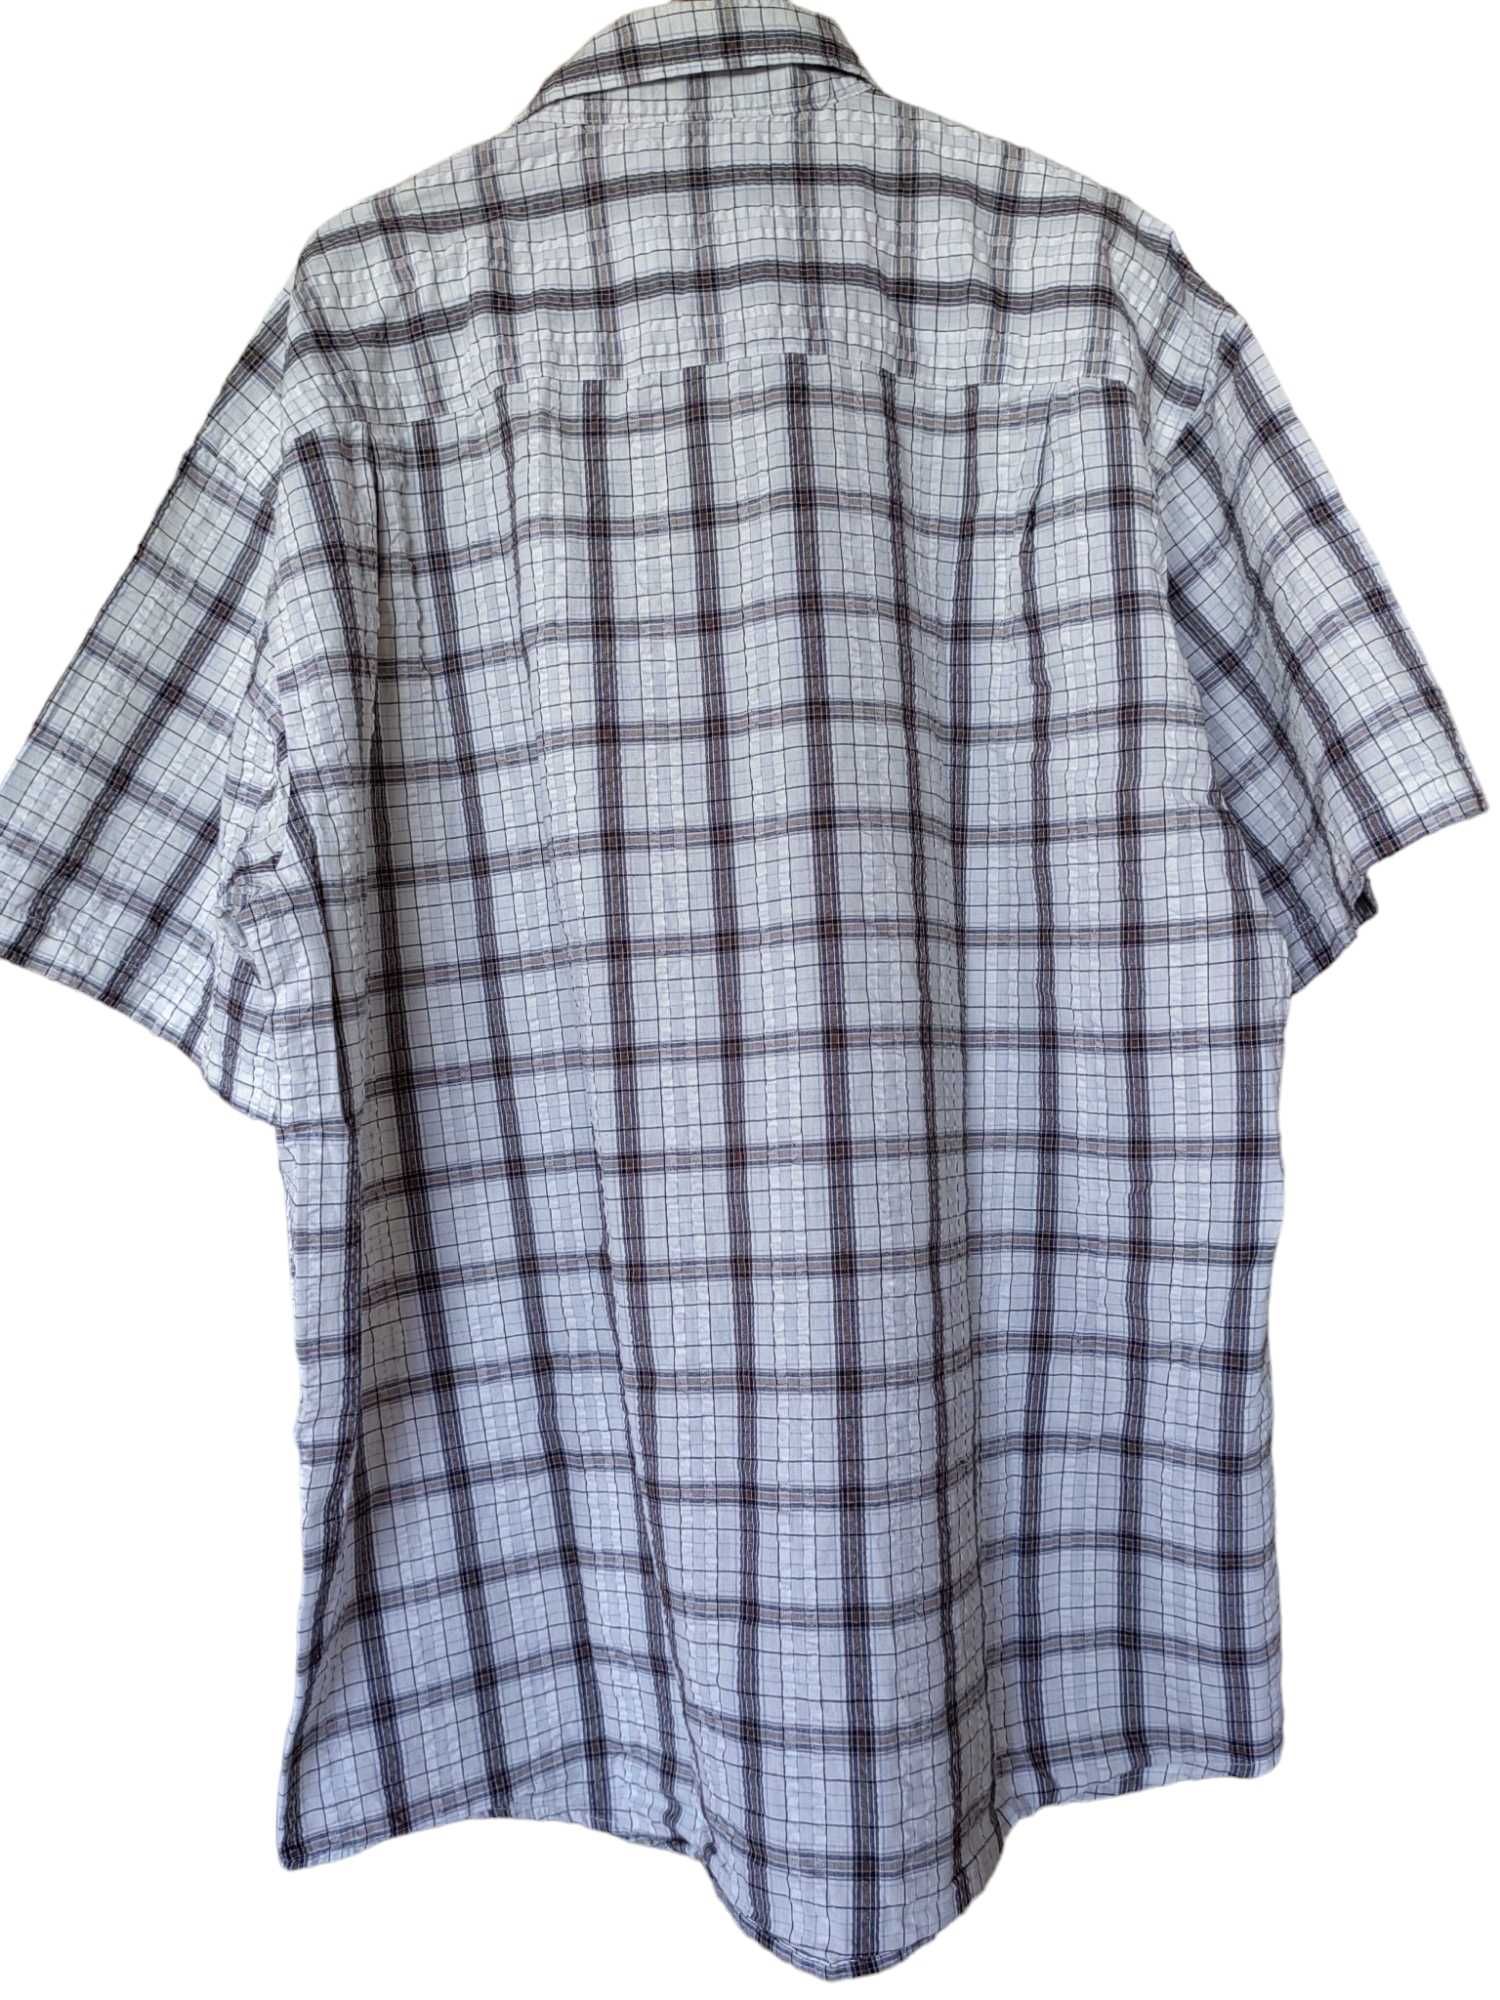 Мъжка карирана риза NKD, 65% памук, 35% полиестер, 80х69 см, XXL